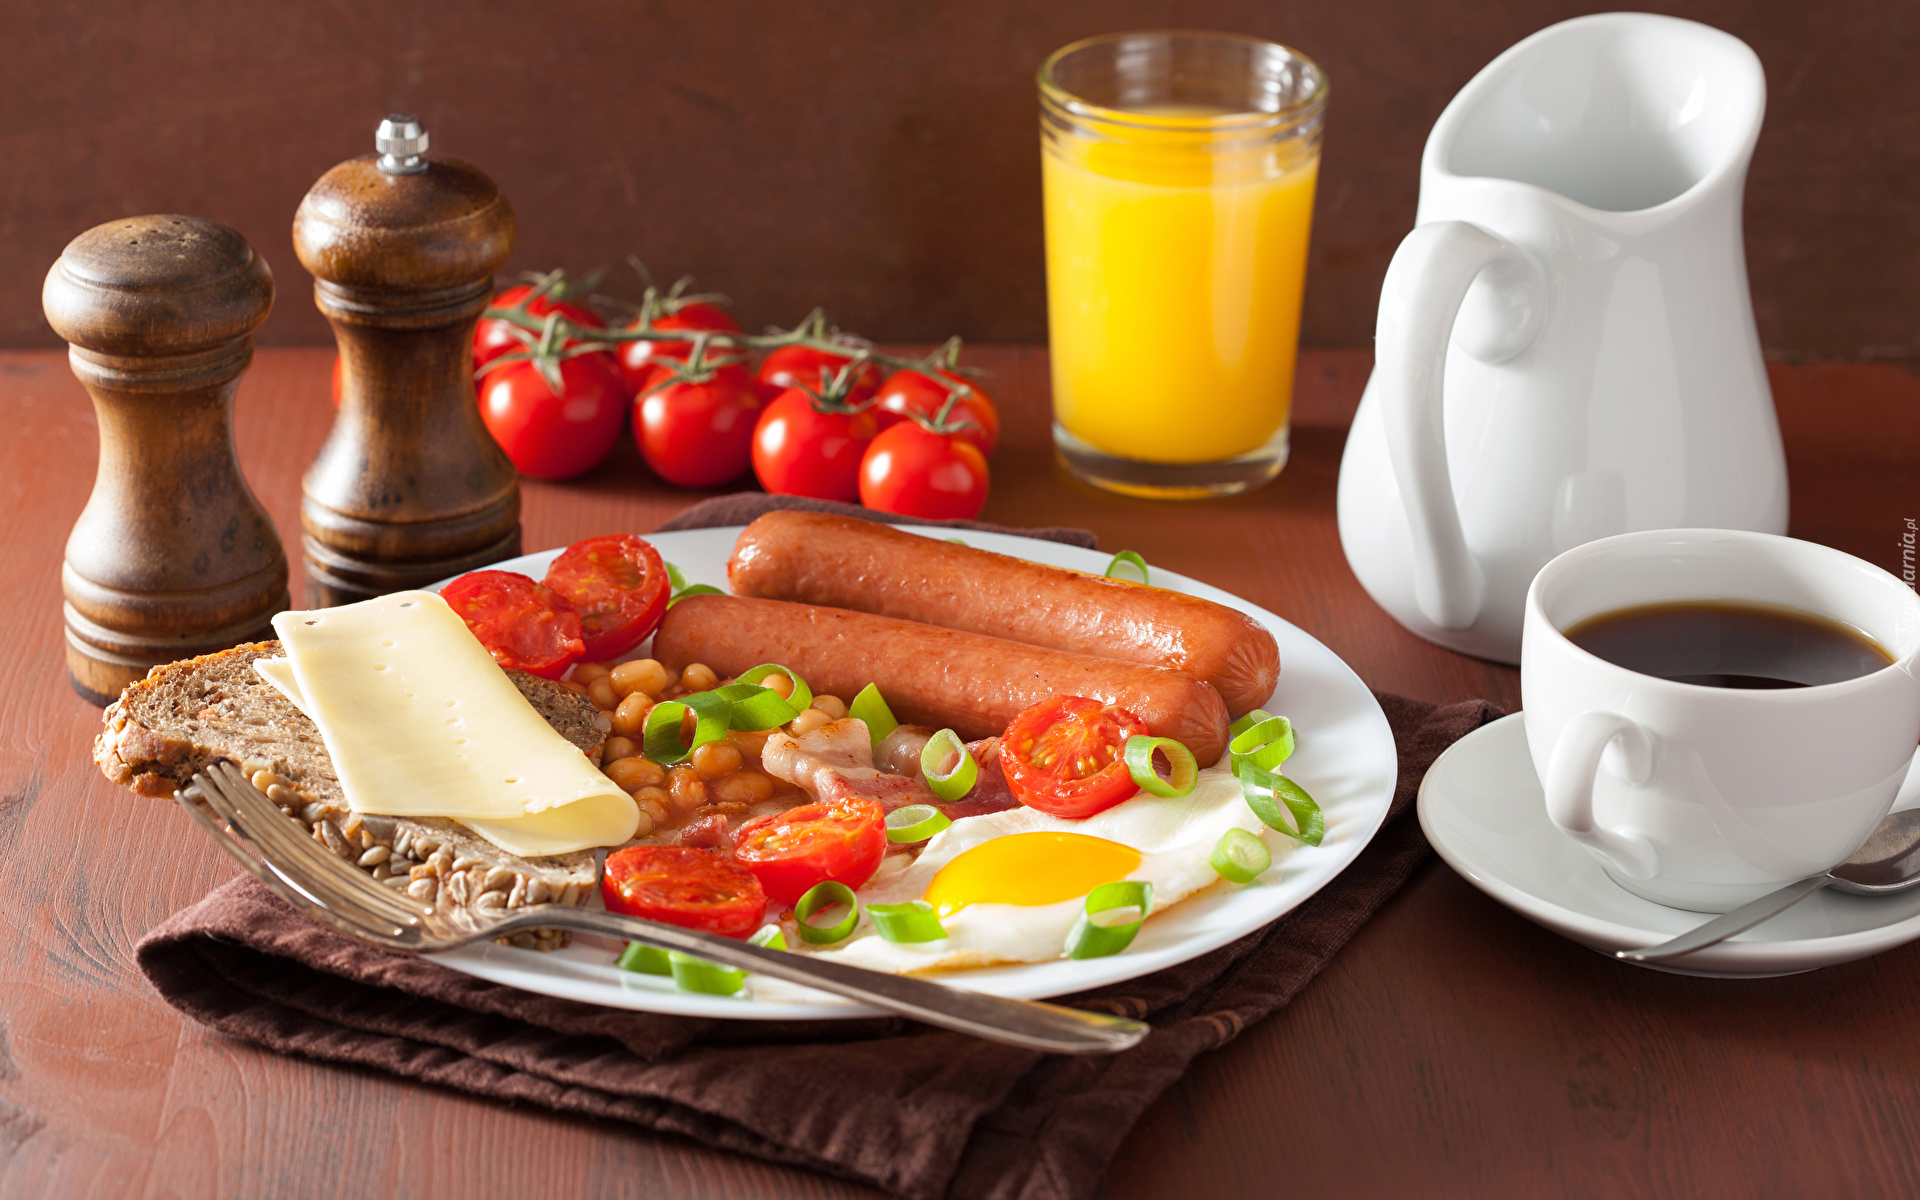 Śniadanie, Kiełbaski, Jajko sadzone, Pomidorki, Kawa, Sok, Dzbanek, Filiżanka